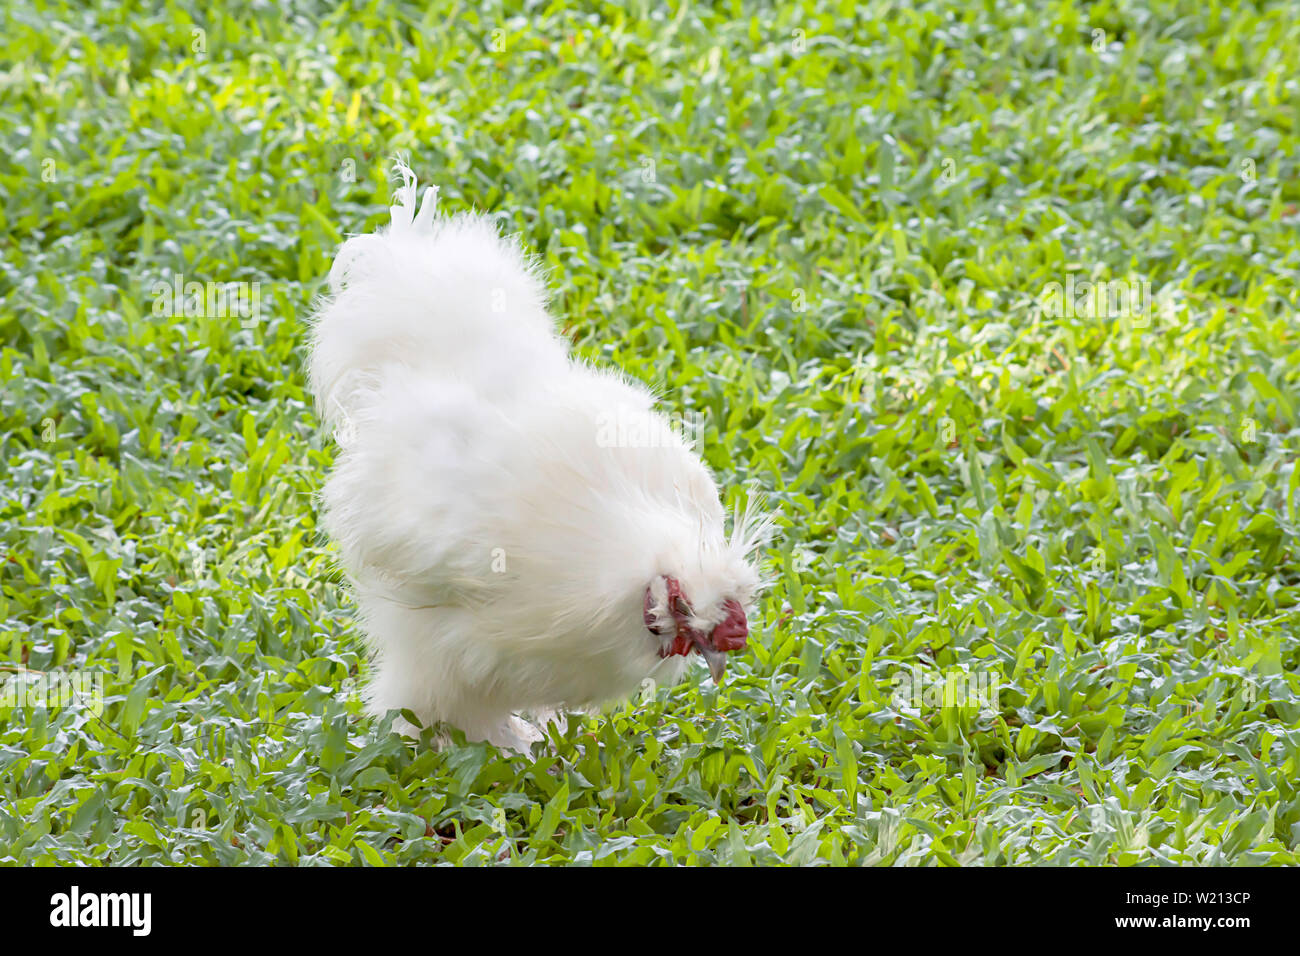 Blanco con pollo o gallina Silkie comer alimentos en el césped en el jardín. Foto de stock